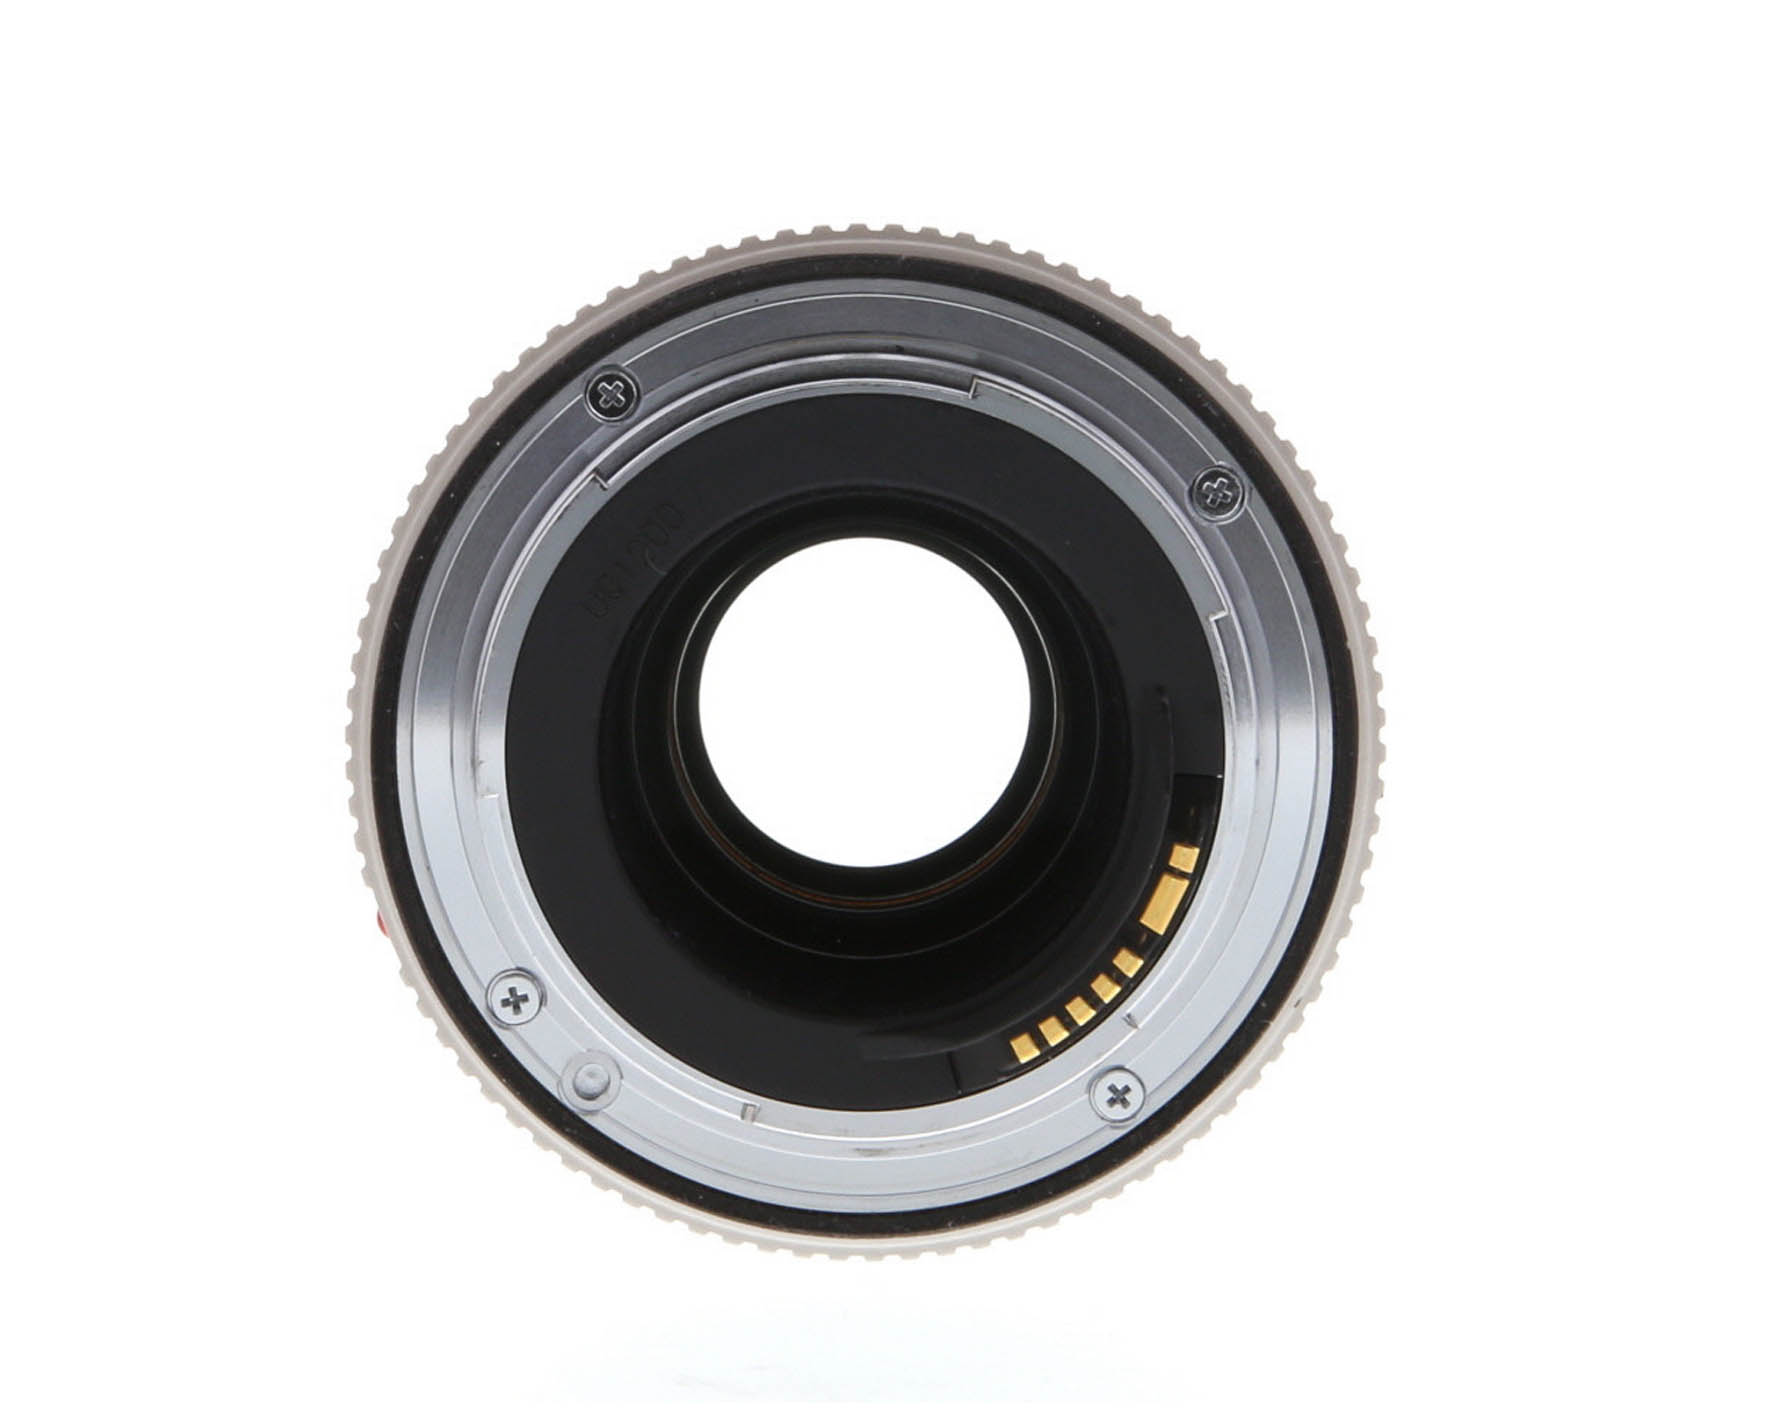 Ống kính chuyển đổi Canon Extender EF 2x II